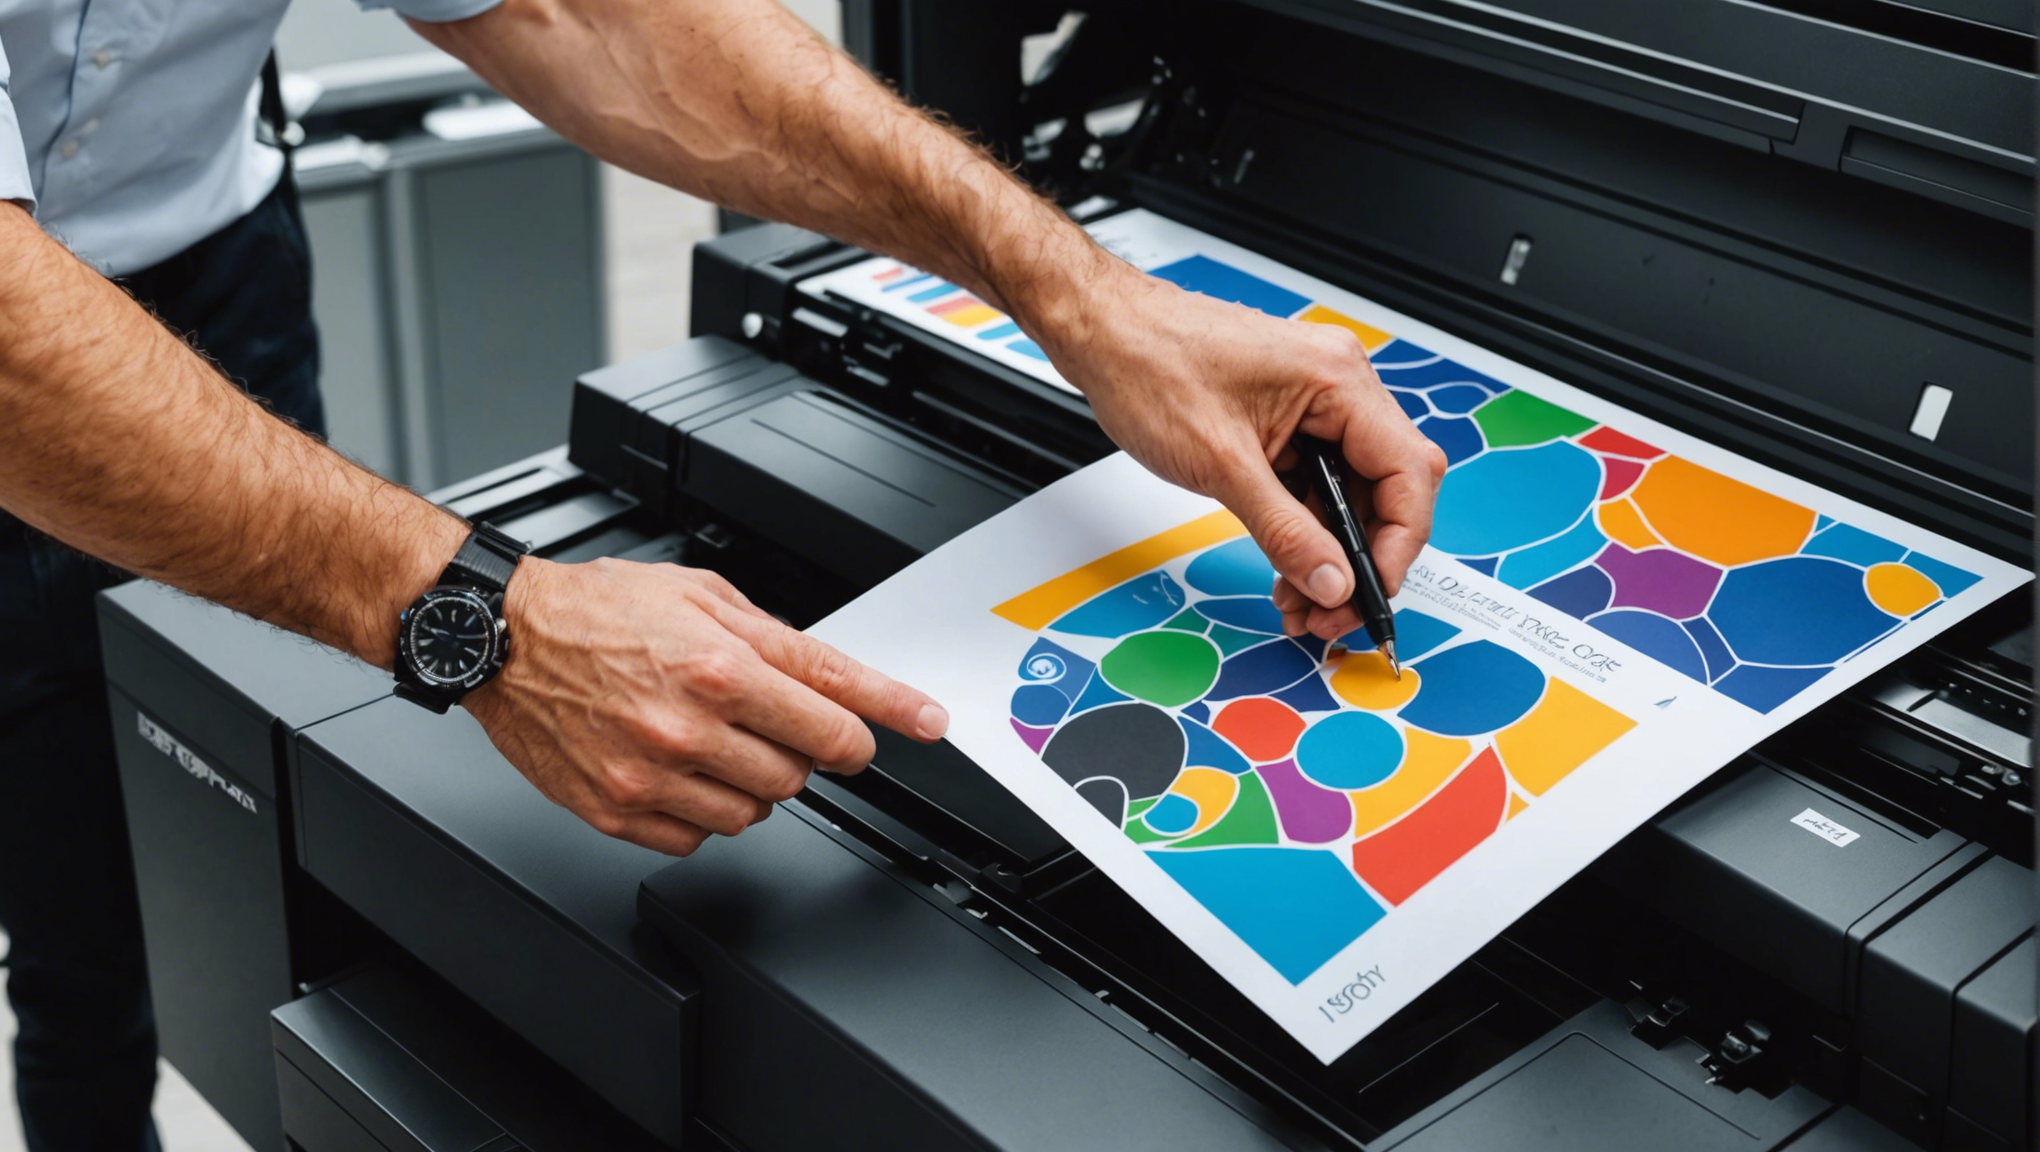 découvrez les avantages des imprimantes jet d'encre professionnelles à prix abordables et trouvez la solution idéale pour vos besoins d'impression.